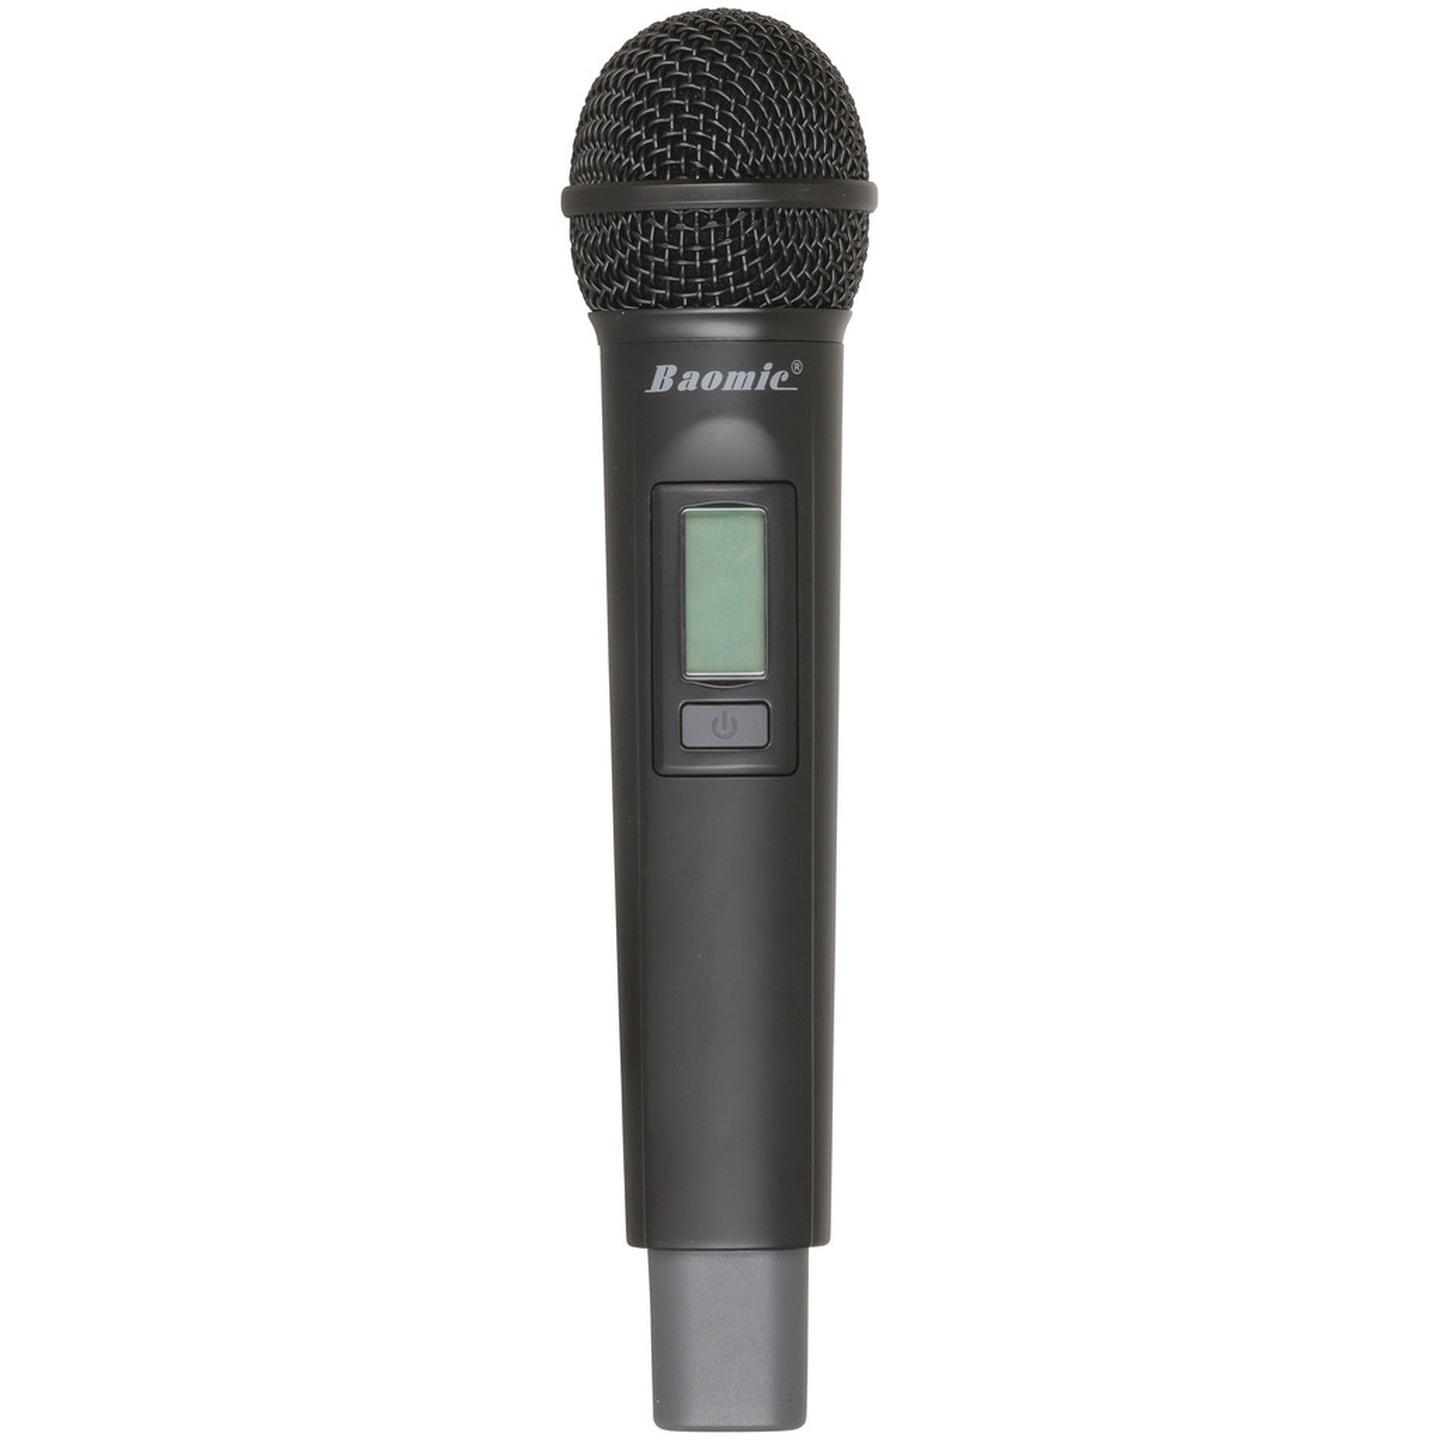 Pro 2 Channel 2.4GHz Digital Wireless Microphone